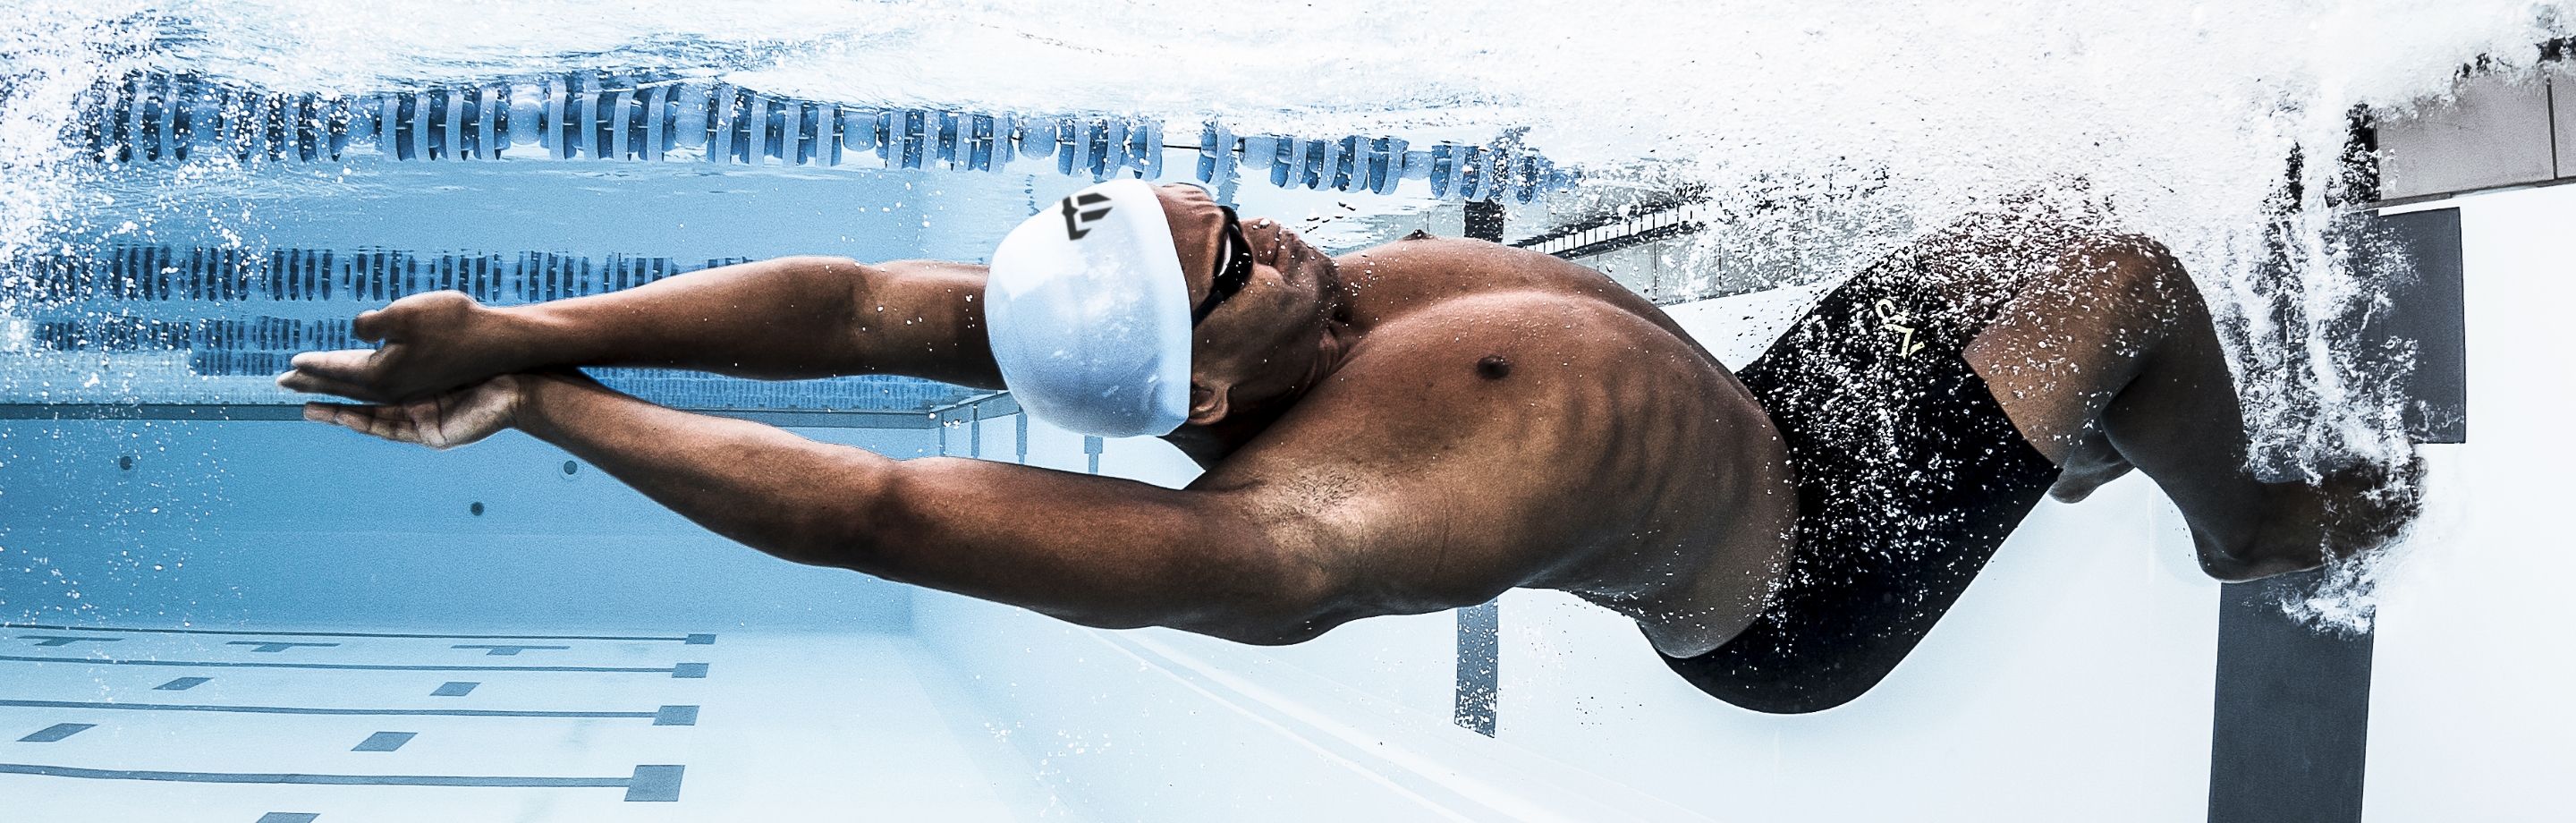 Phelps - maillots de bain et équipement de la main légendaire